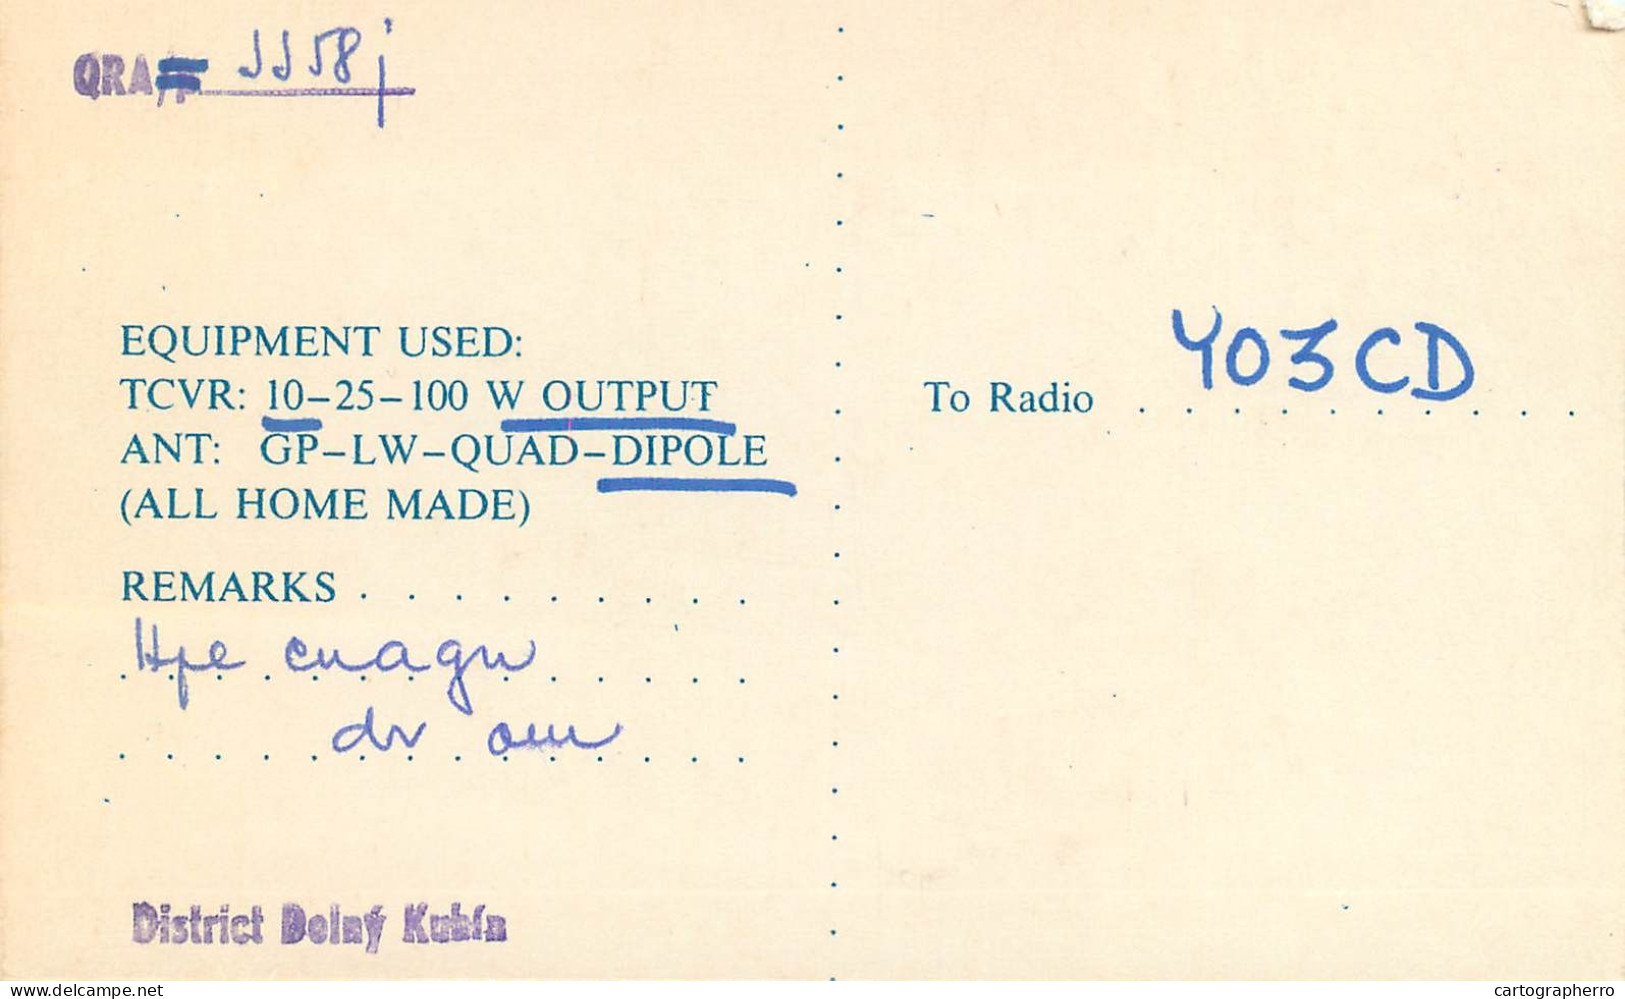 QSL Card Czechoslovakia Radio Amateur Station OK3CDZ Y03CD 1983 Glasa Viliam - Amateurfunk